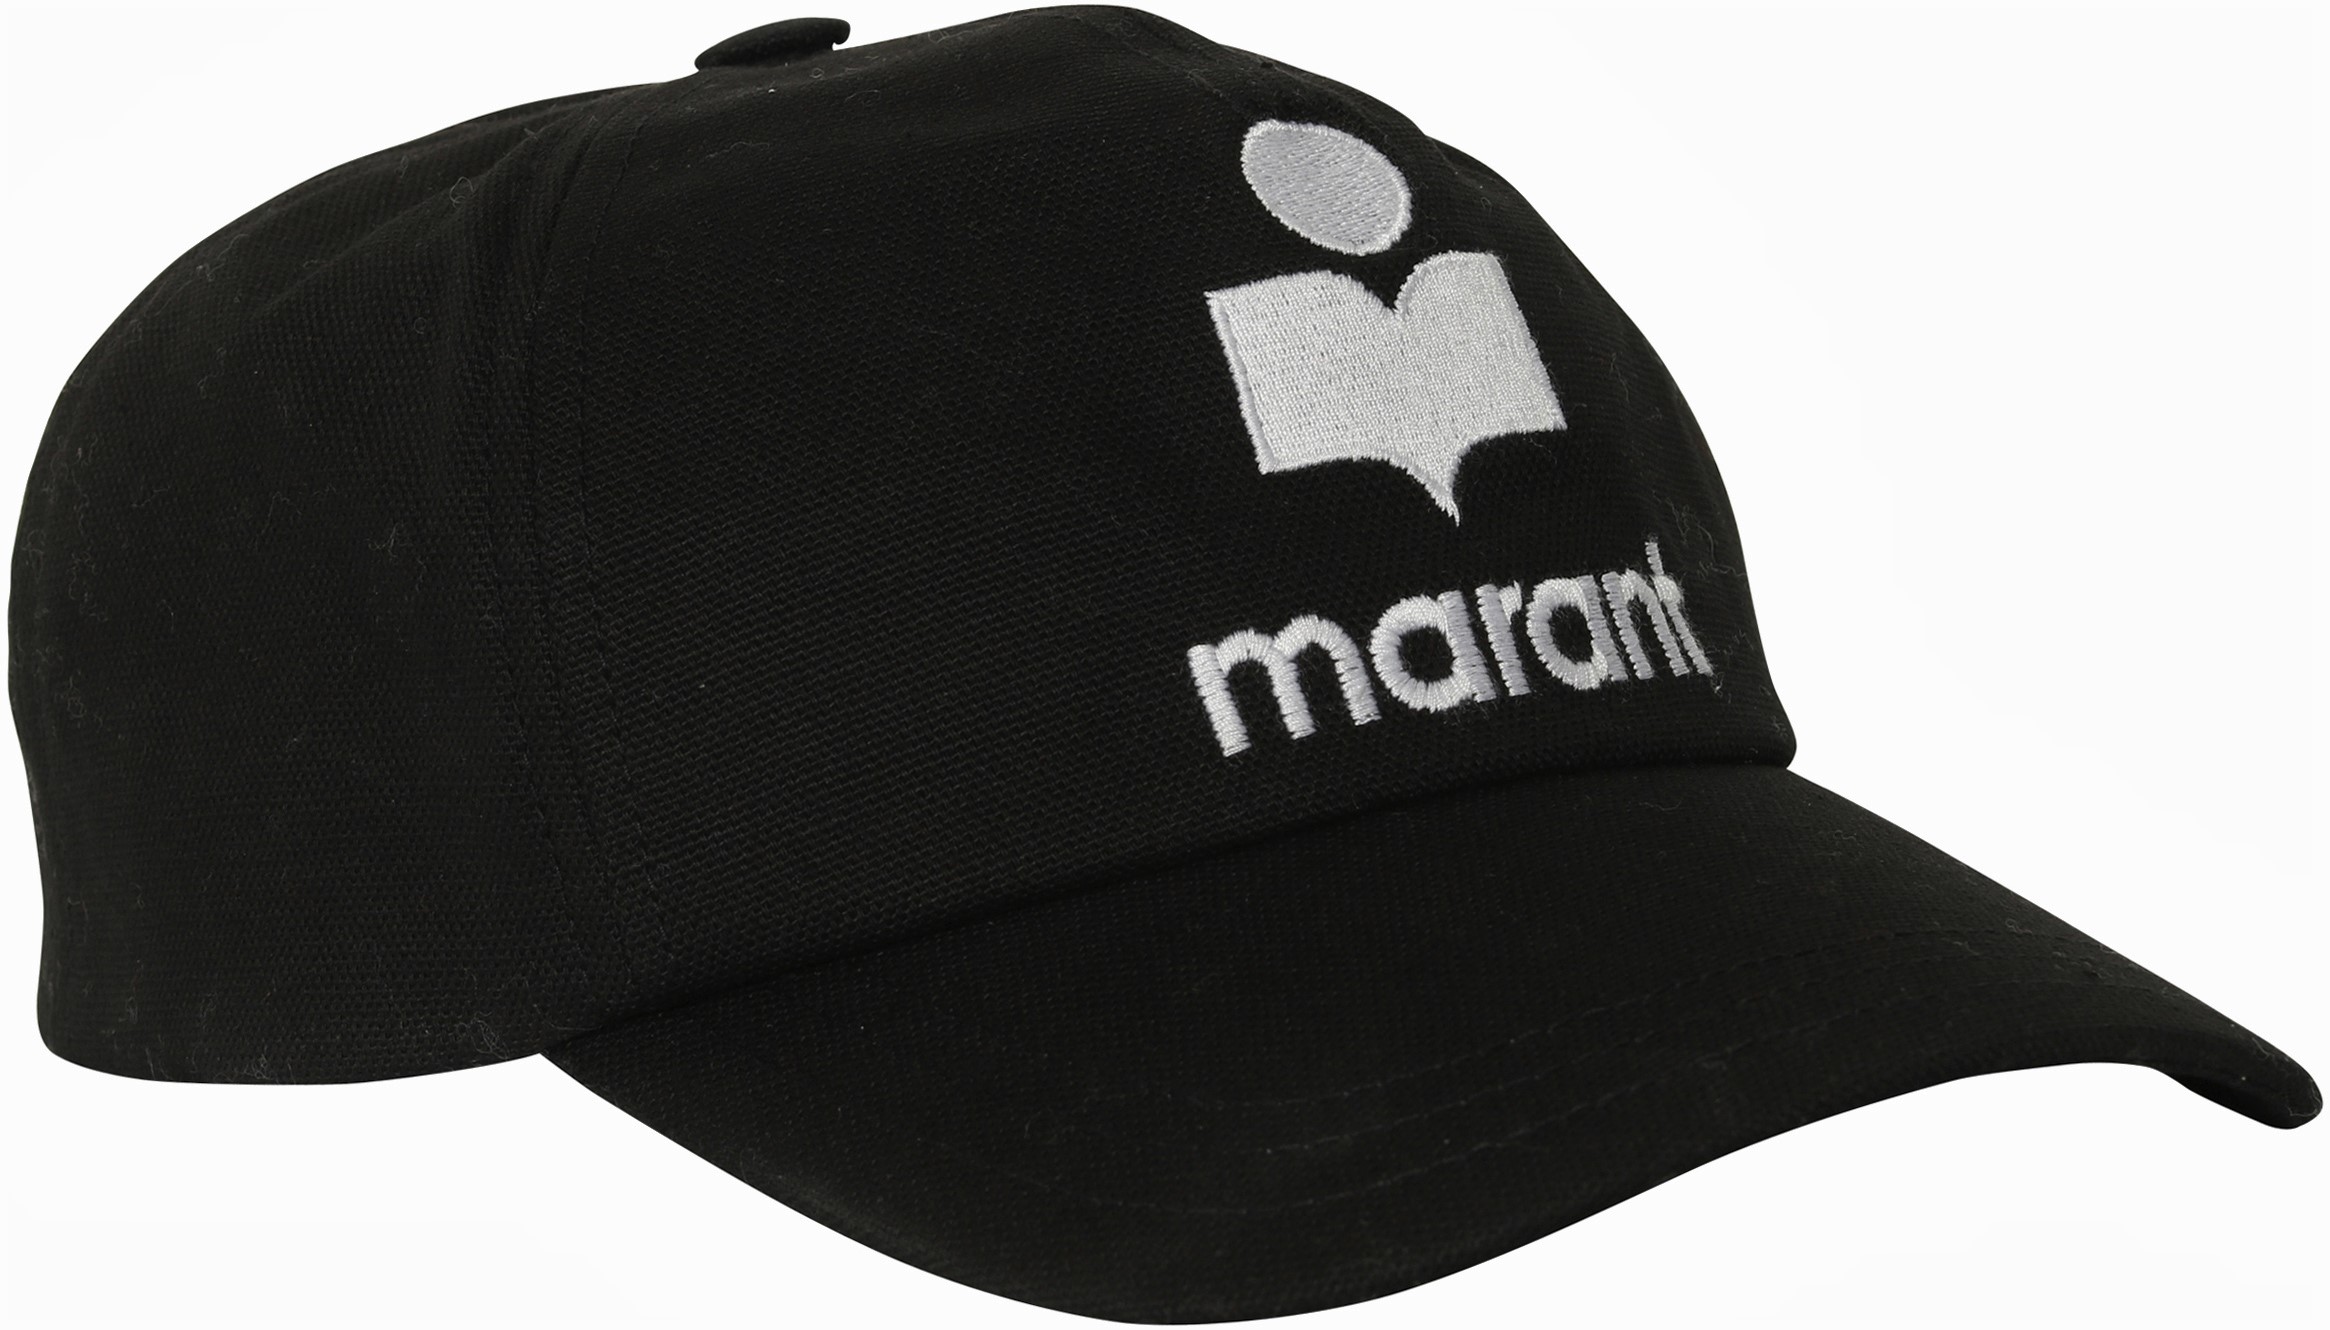 Isabel Marant Tyron Cap in Black/Ecru